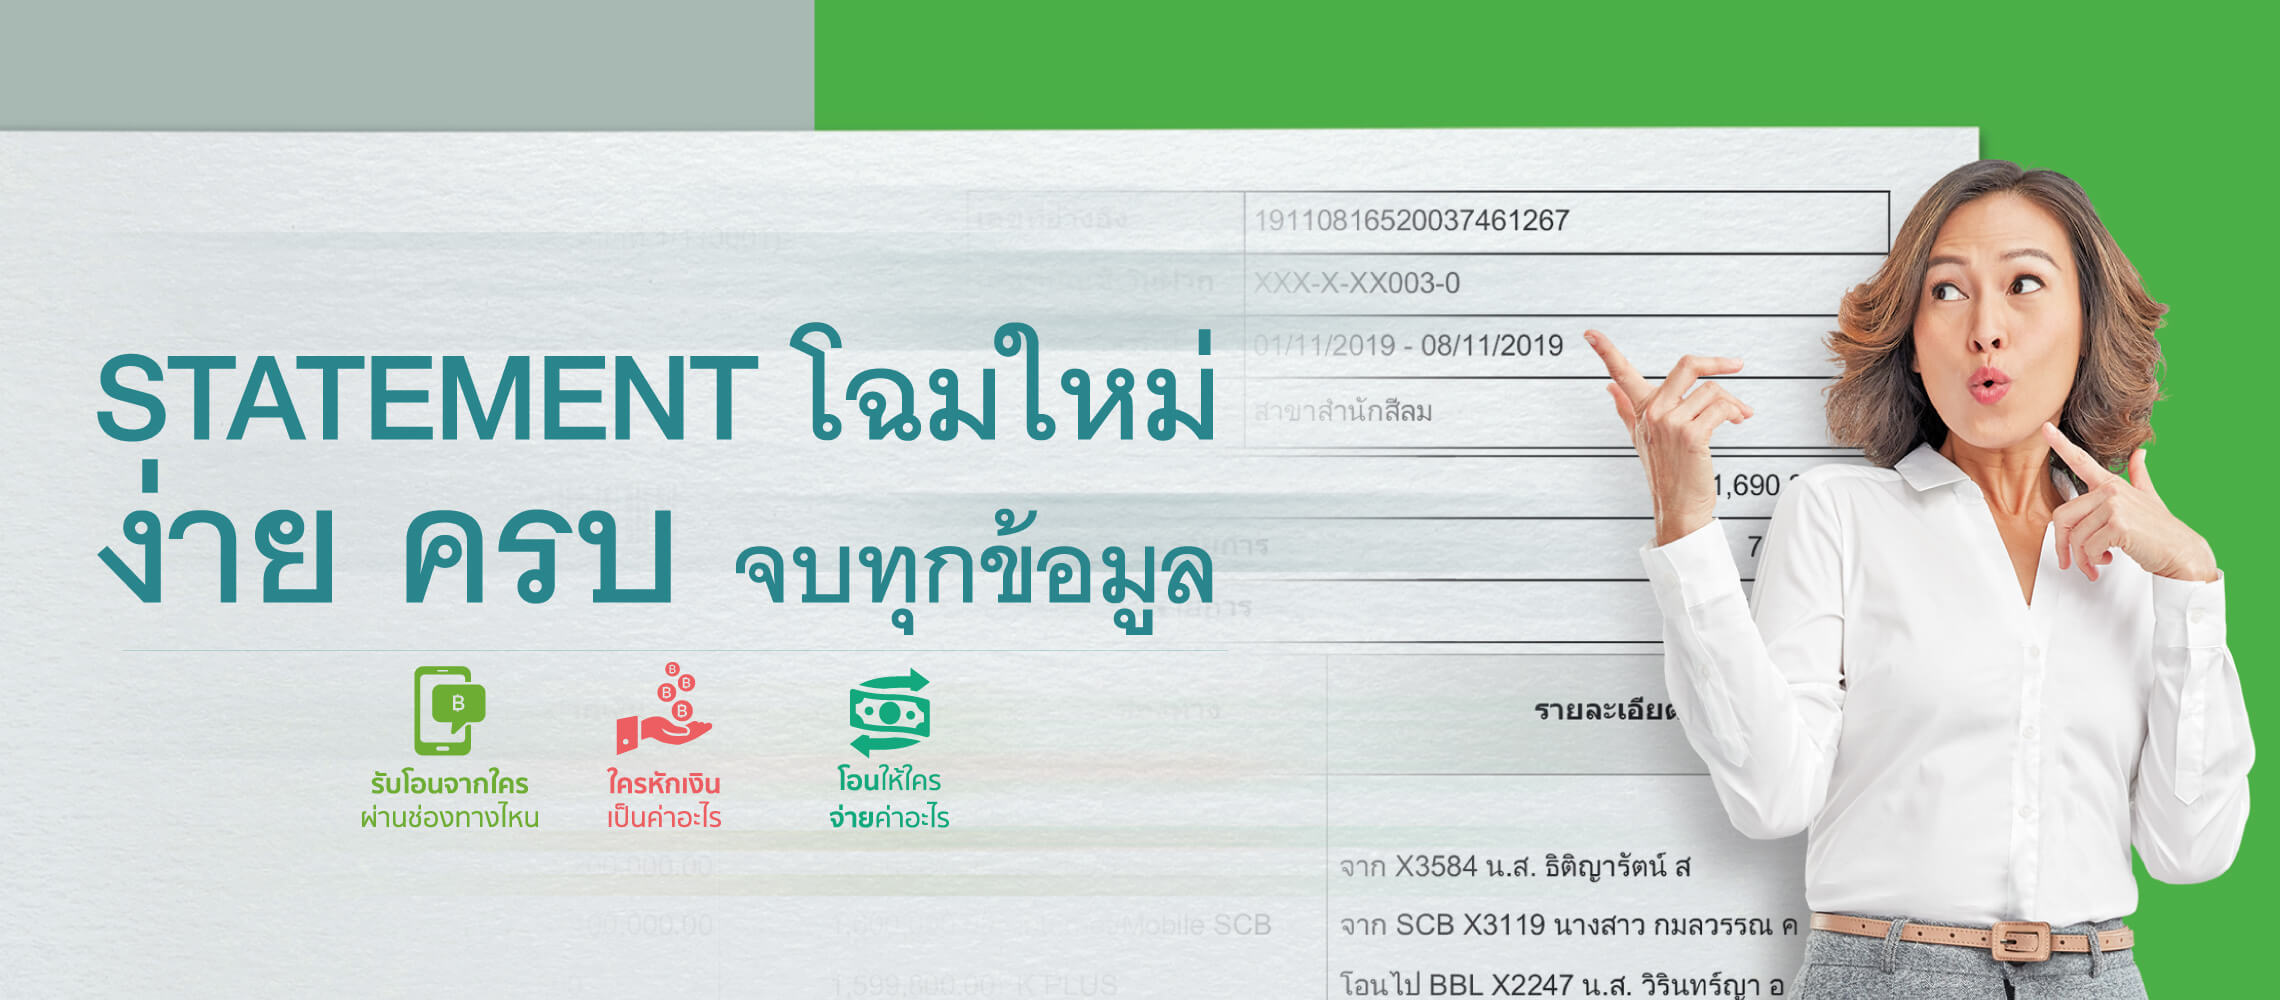 รายละเอียดครบถ้วน เข้าใจง่าย ตรวจสอบได้ด้วยตัวเอง - ธนาคารกสิกรไทย